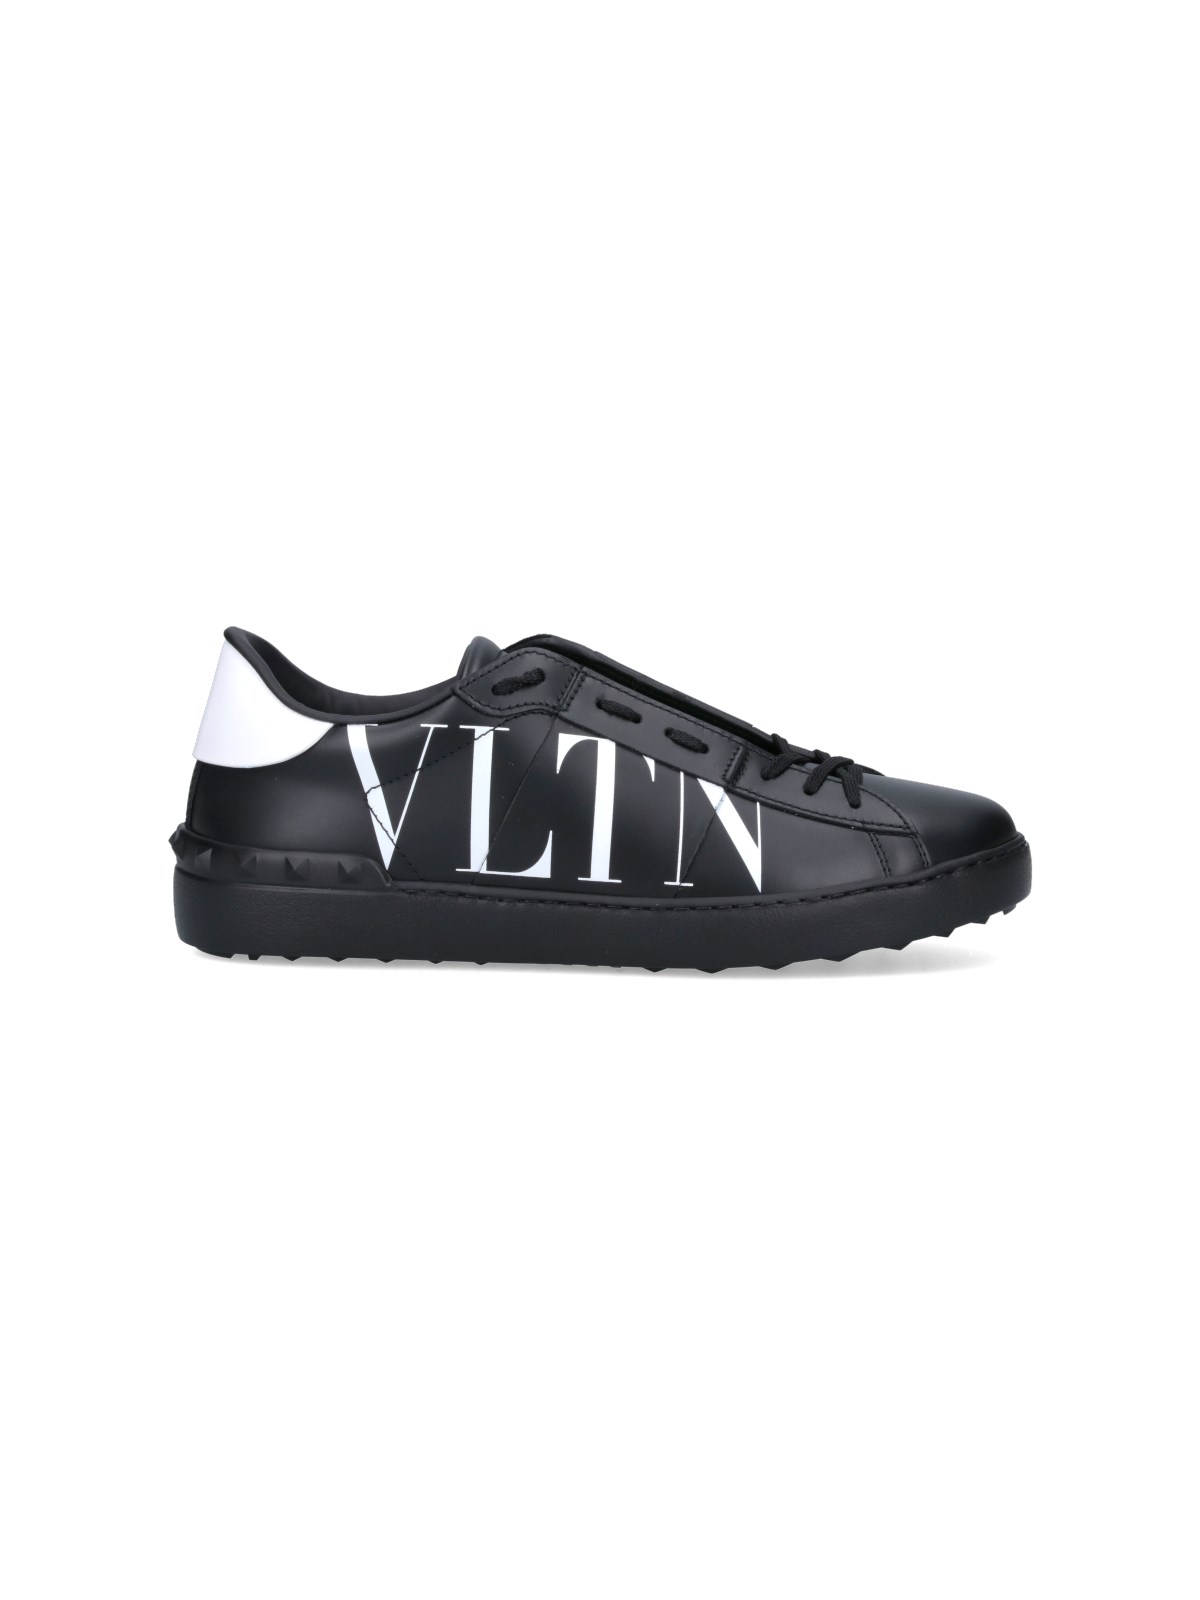 Valentino Garavani "vltn" Sneakers In Black  